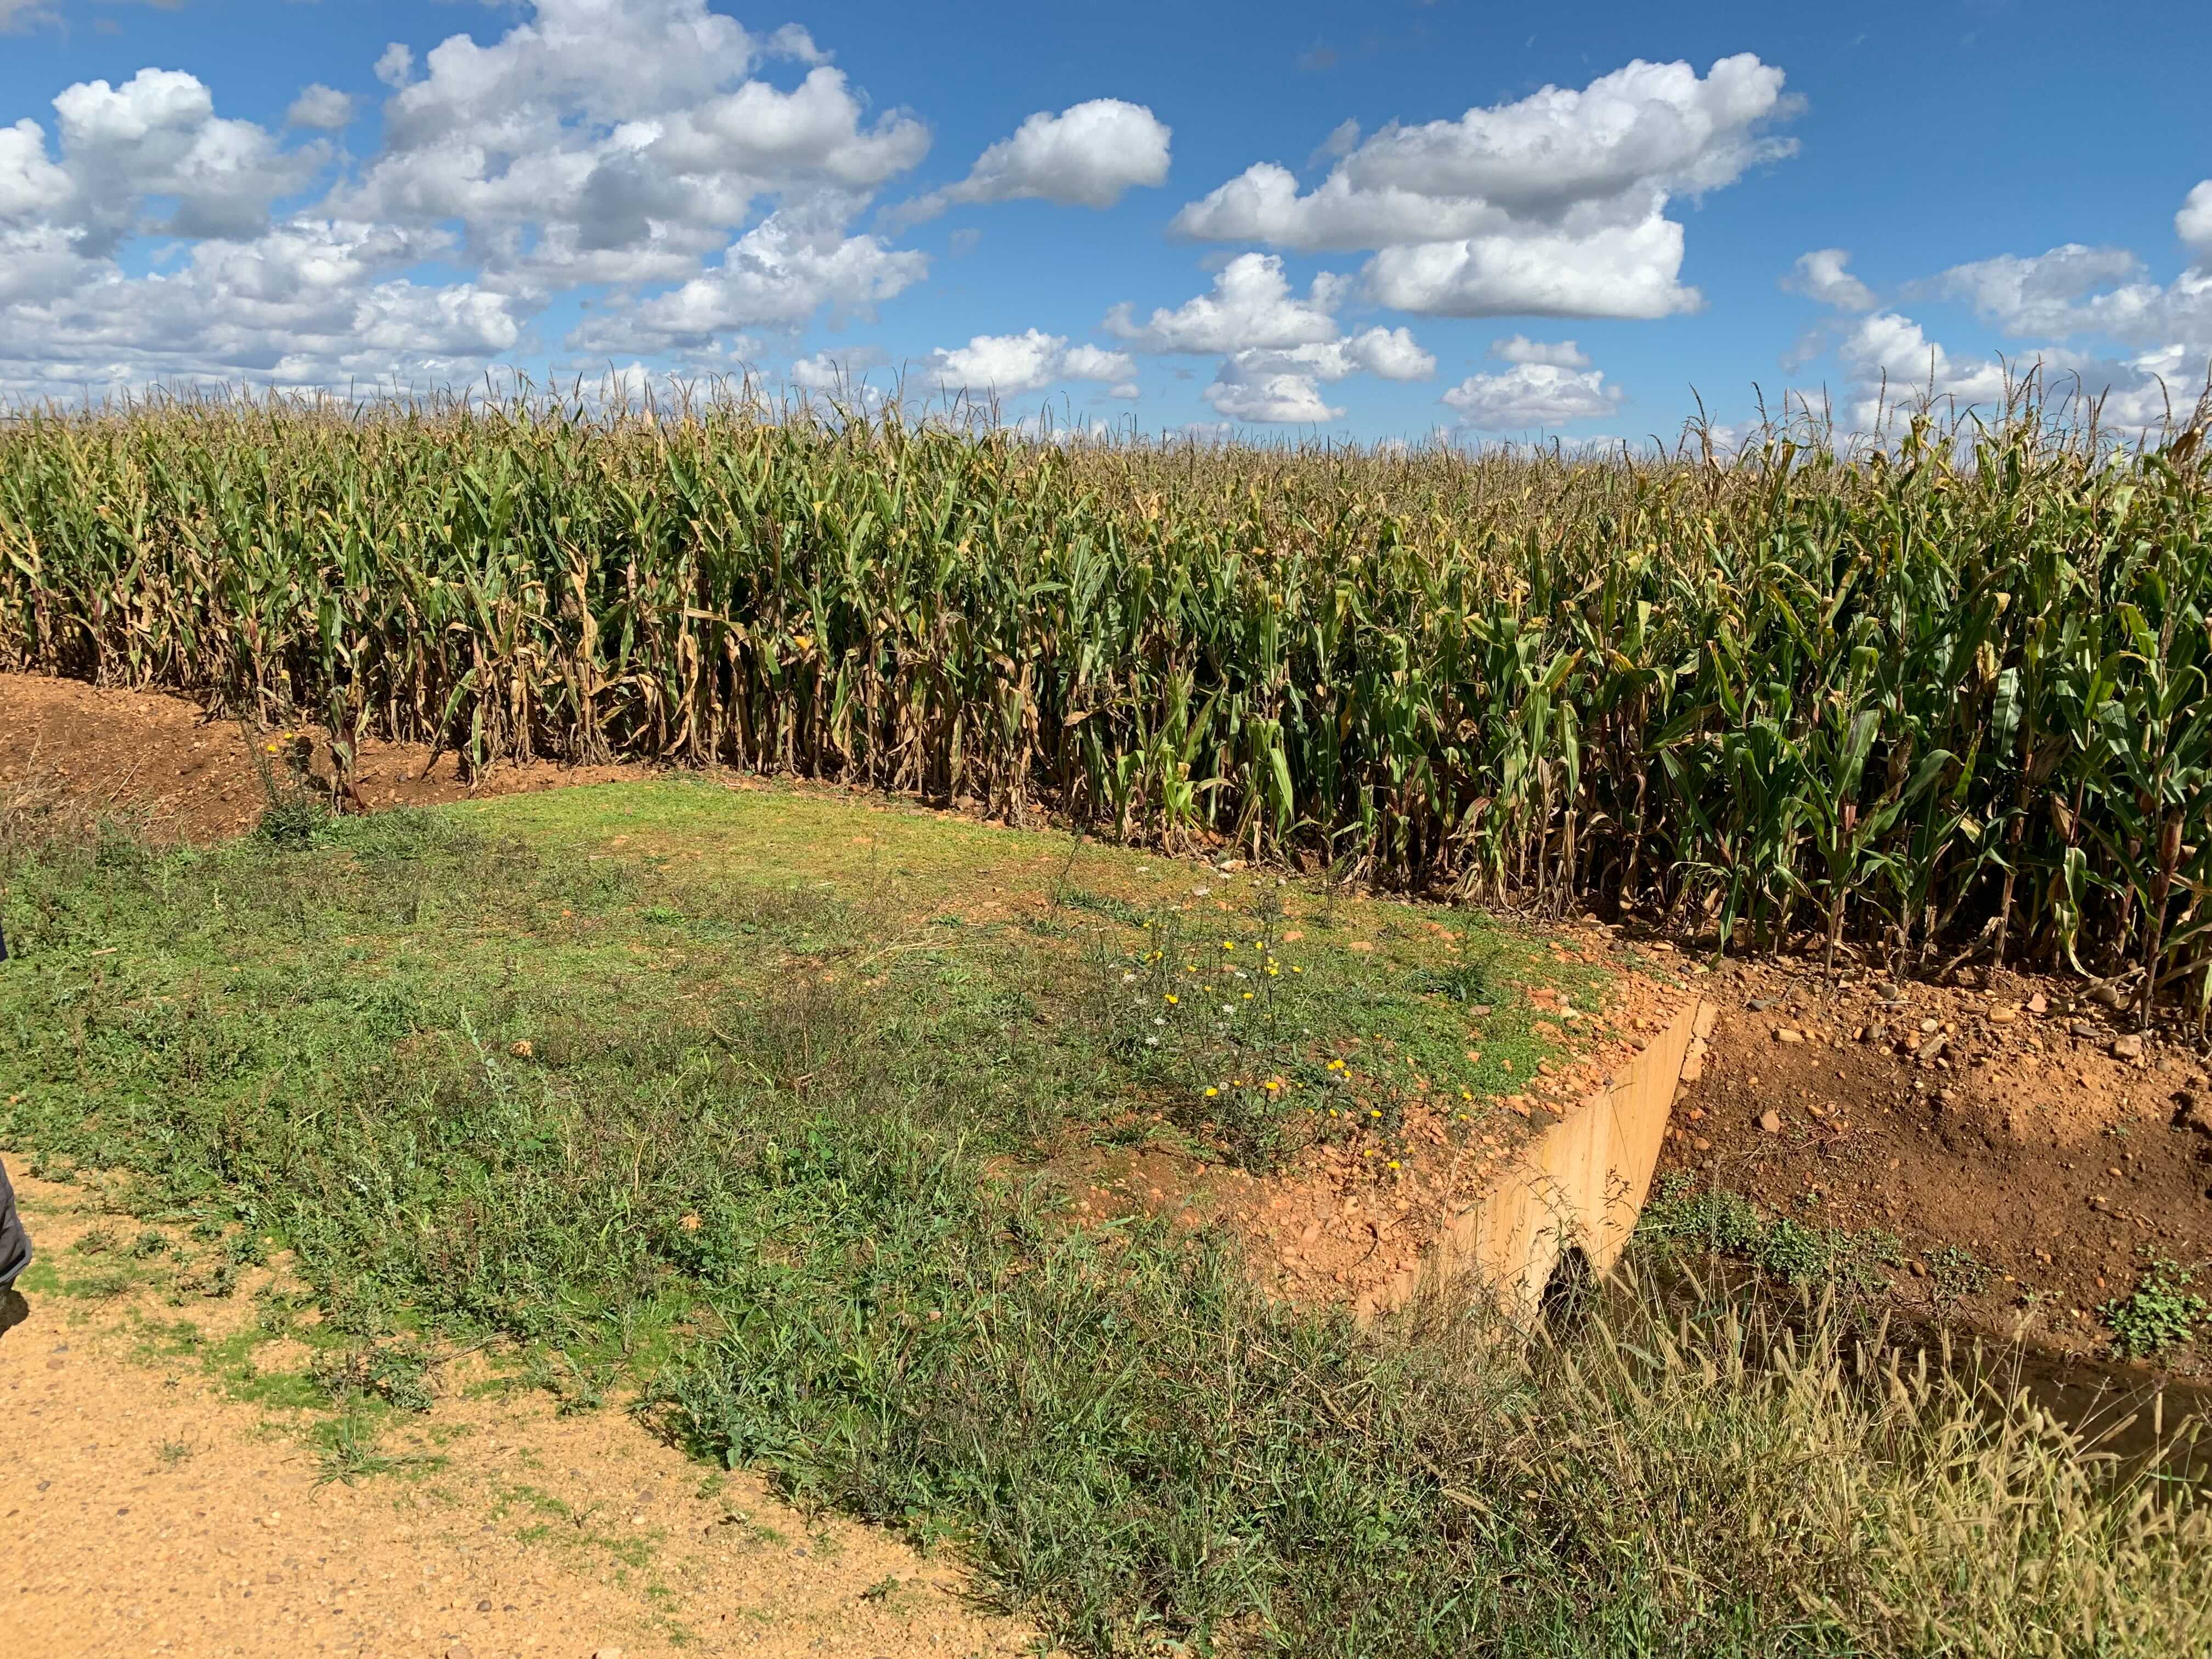 Photo du spot d’observation de backup pour l'équipe 6. C’est un champ de maïs avec des petits cumulus au dessus.